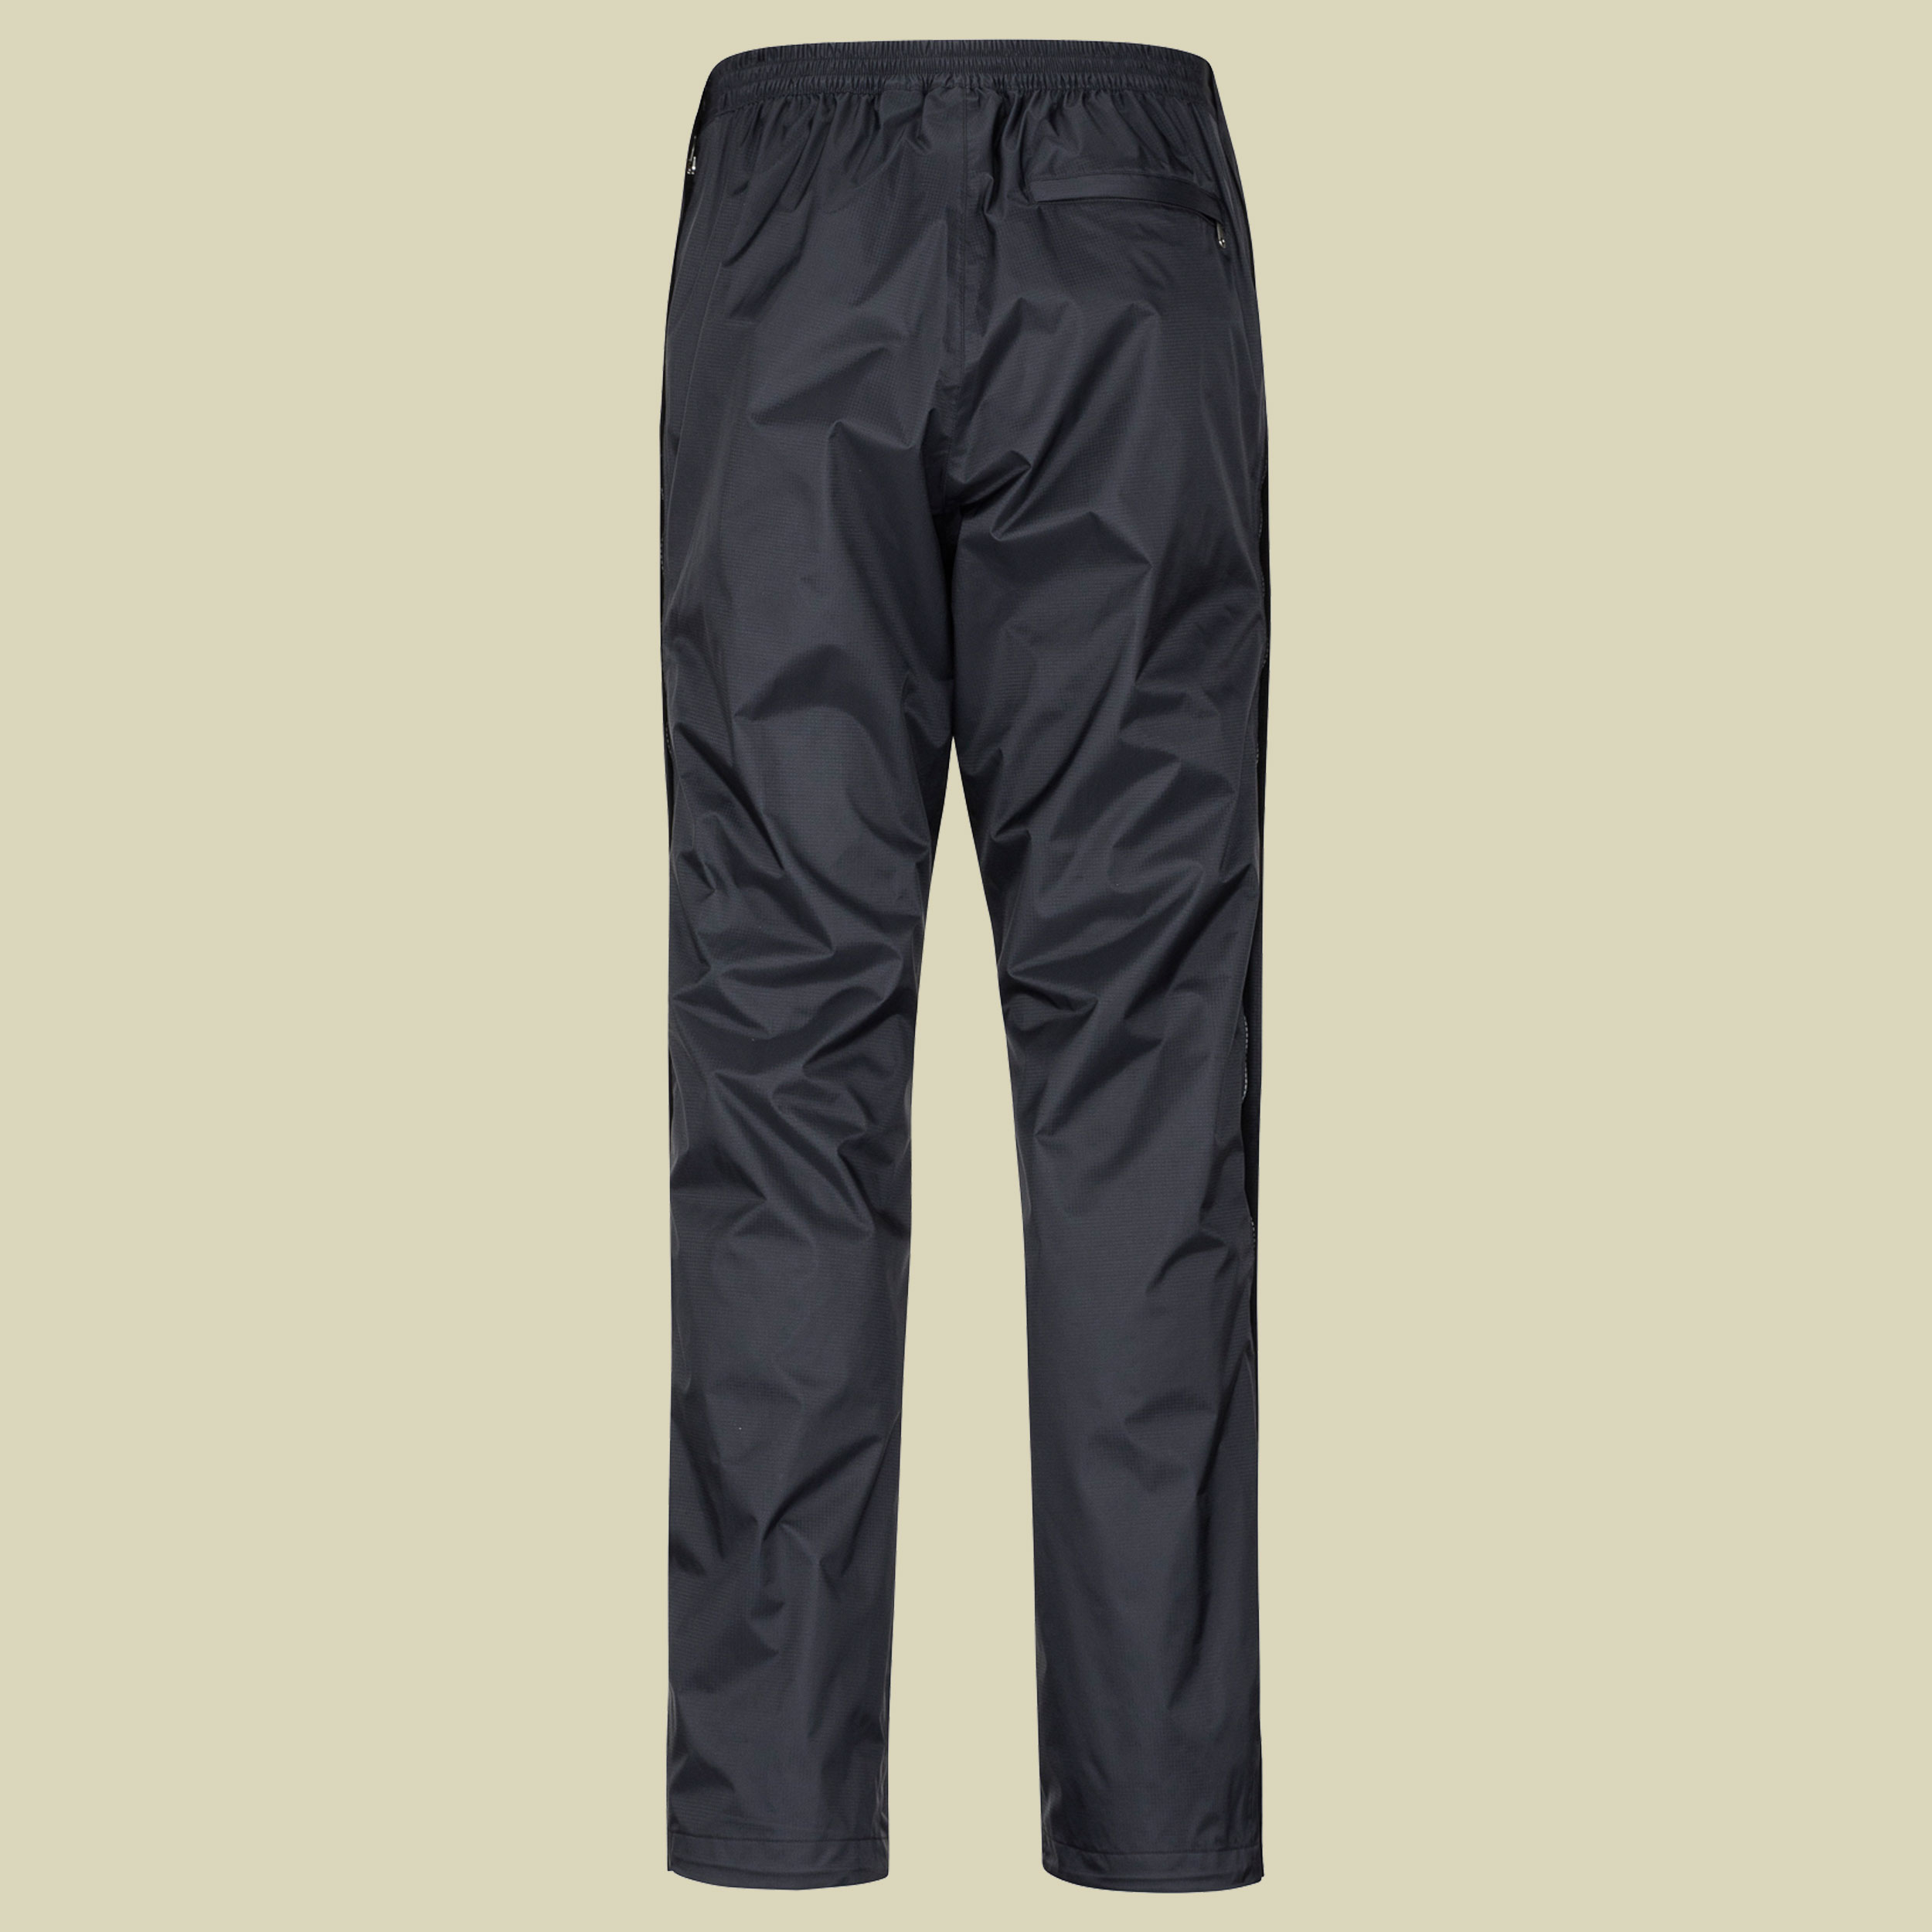 PreCip Eco Full Zip Pant short Men Größe XL (short) Farbe black